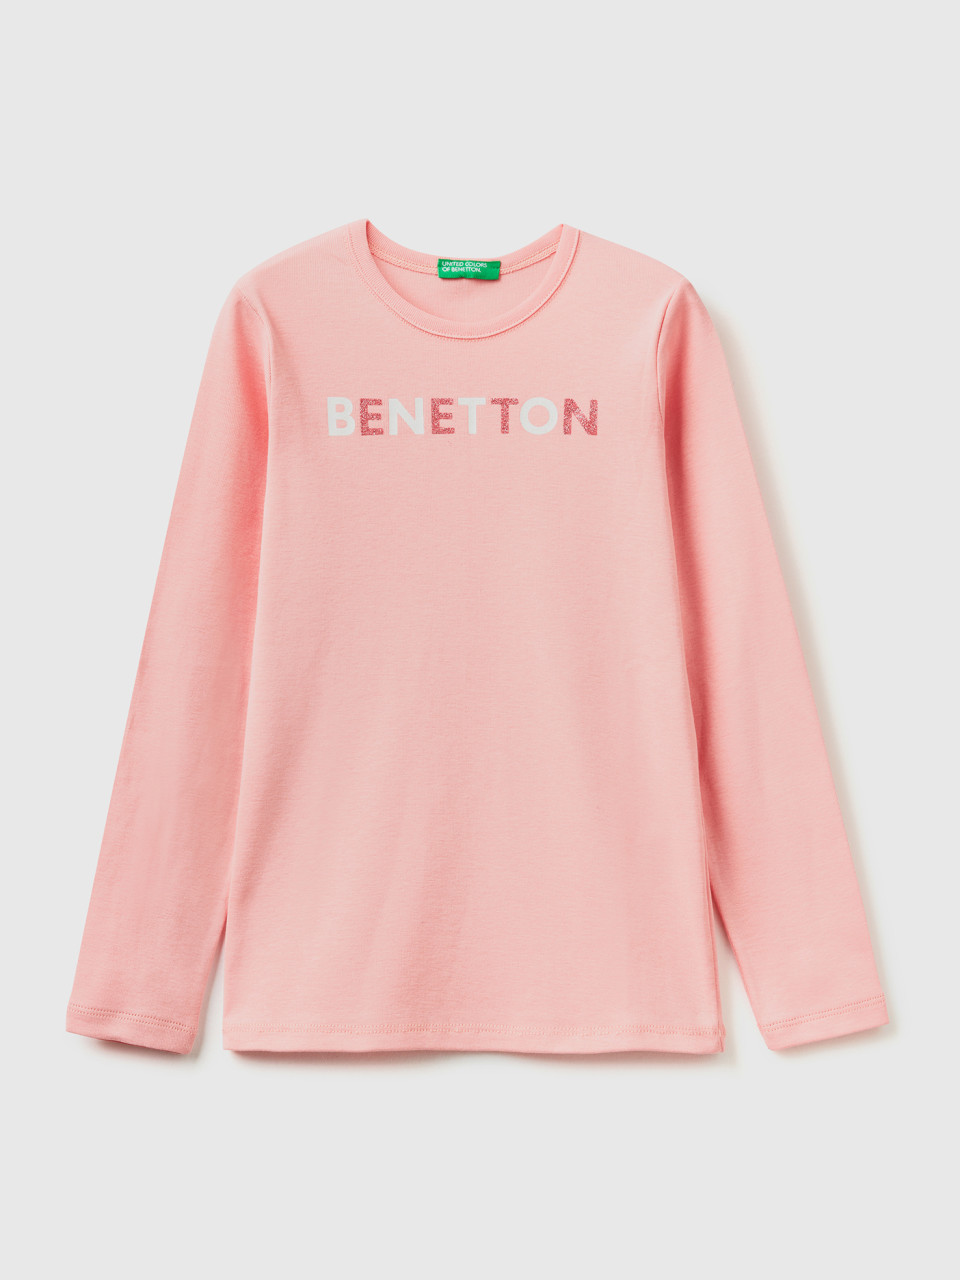 Benetton, Long Sleeve T-shirt With Glitter Print, Pink, Kids